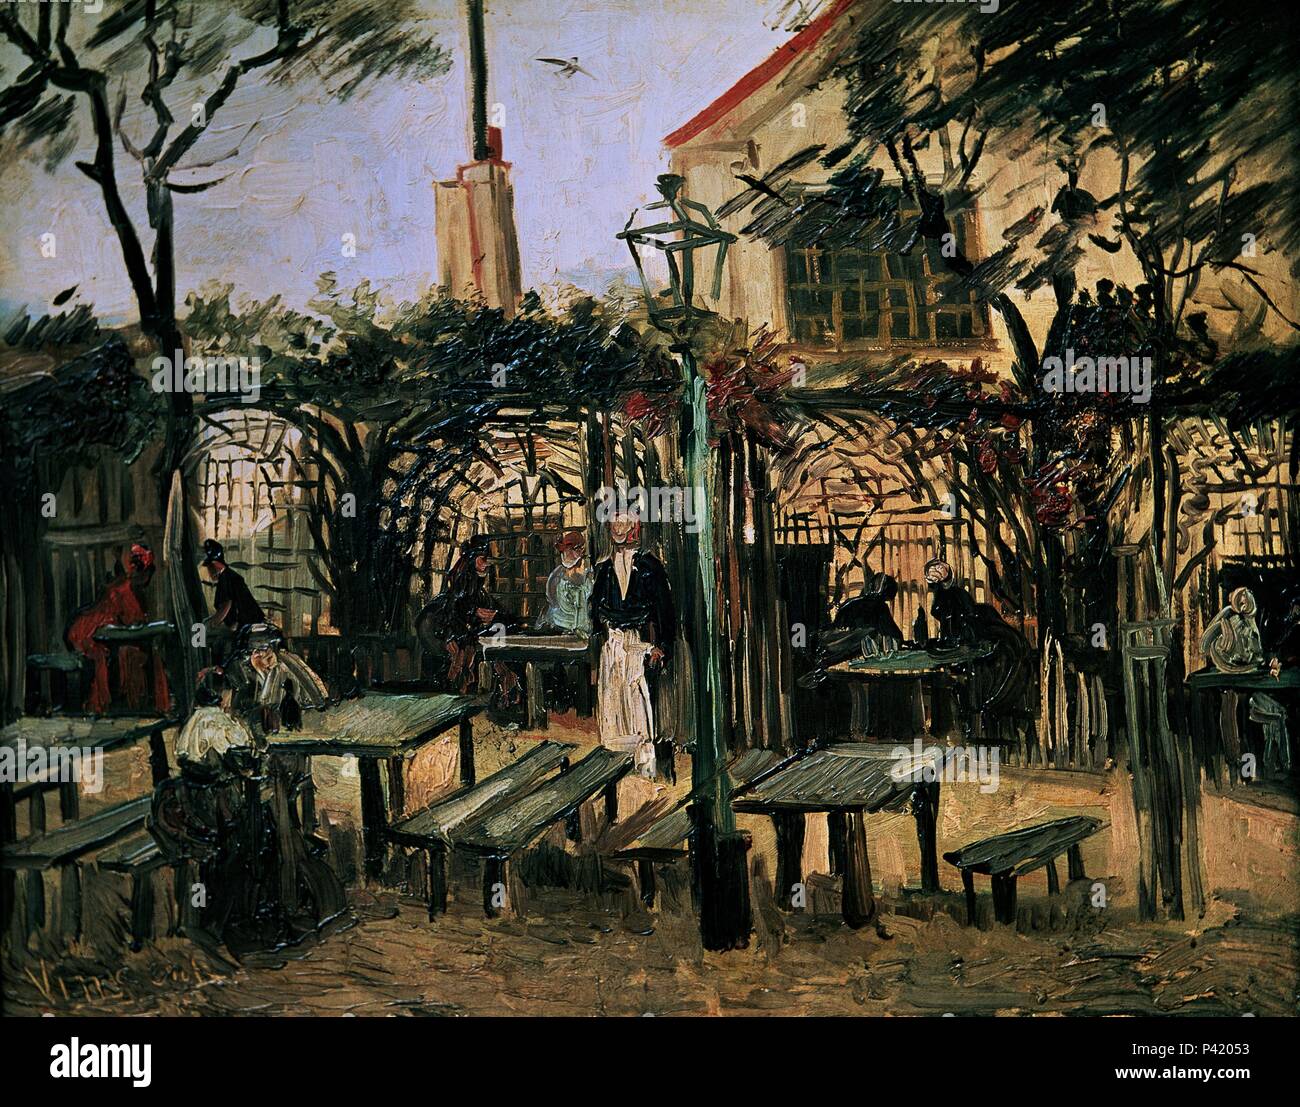 Gärten zum Montmartre und 1886 - 49 x 64 cm - Öl auf Leinwand. Autor: Vincent van Gogh (1853-1890). Lage: Musee D'Orsay, Frankreich. Auch als: MERENDERO 'La Guinguette'EN MONTMARTRE bekannt. Stockfoto